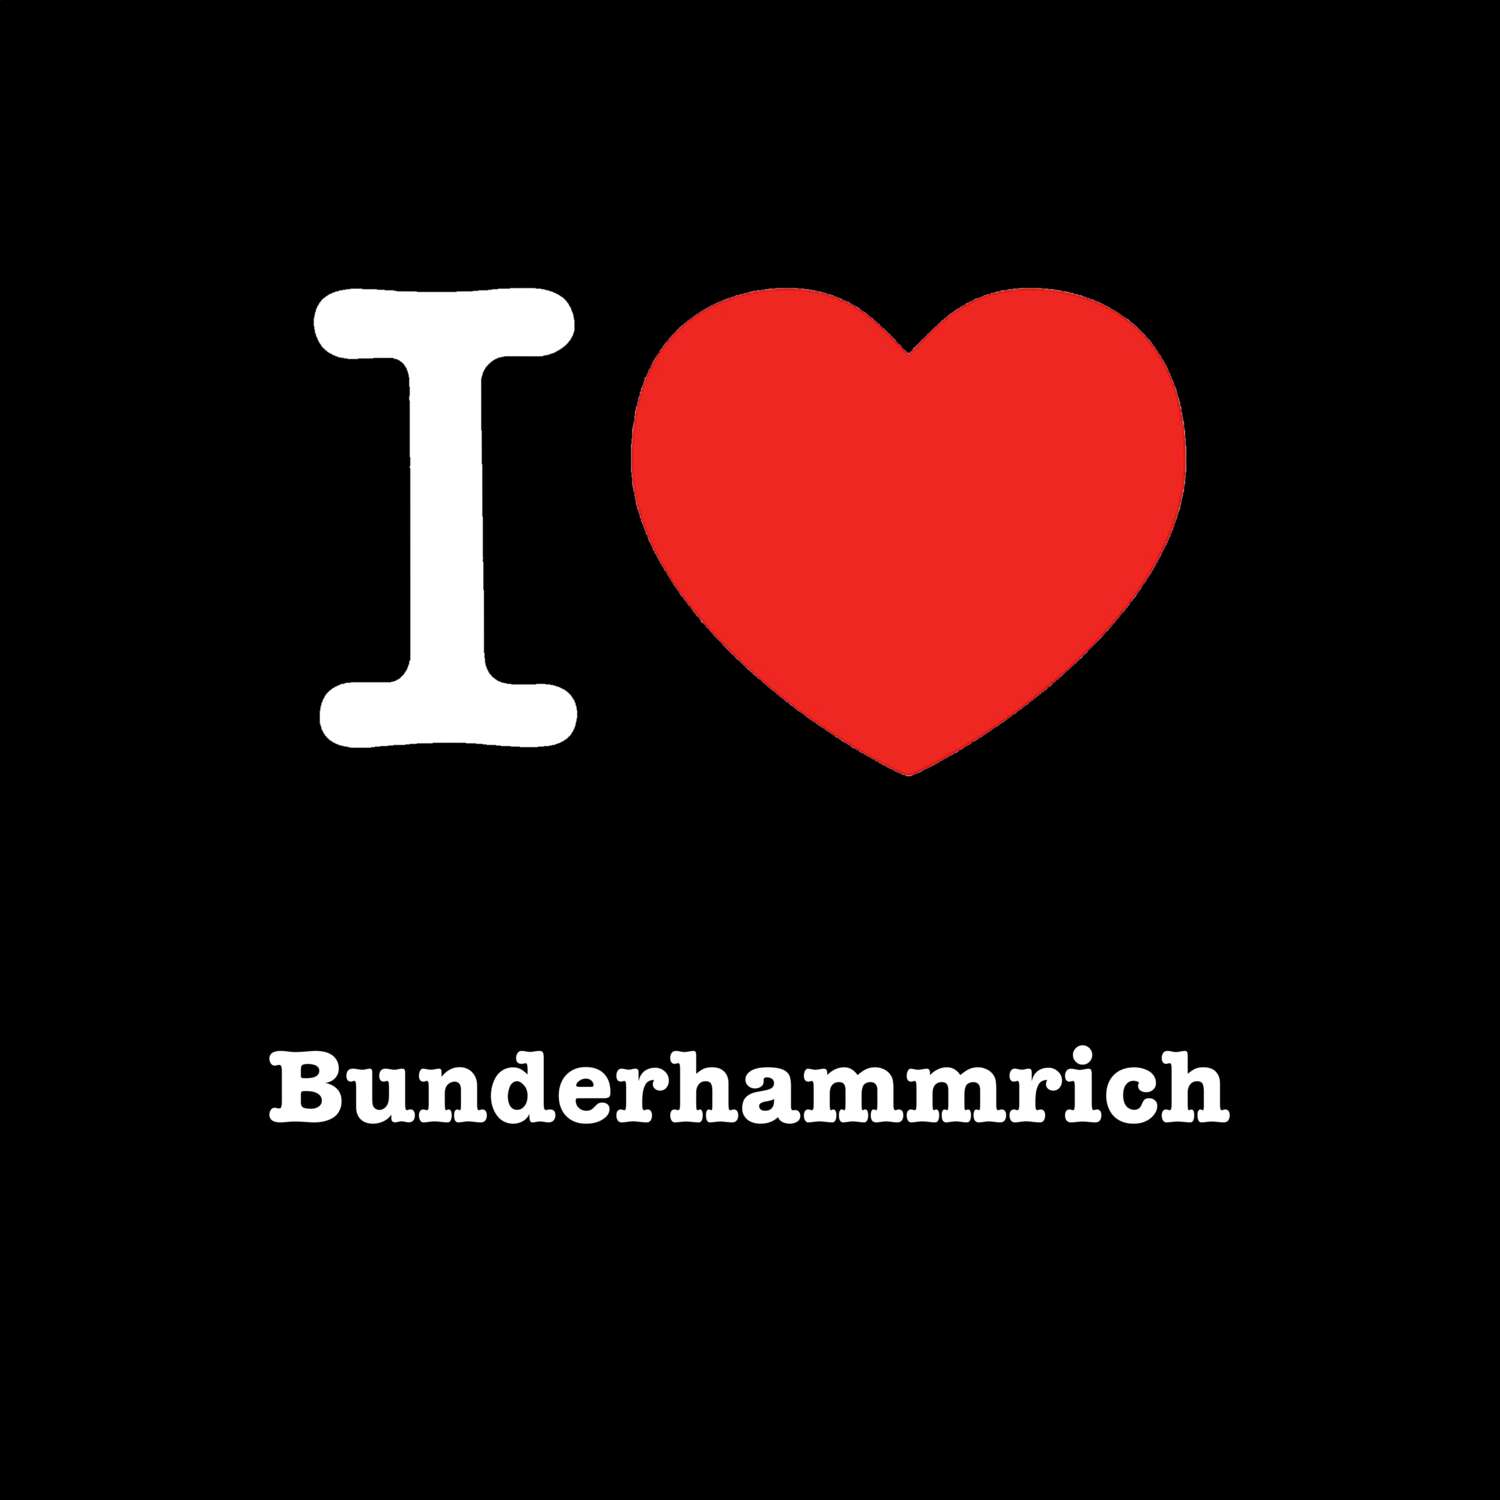 Bunderhammrich T-Shirt »I love«